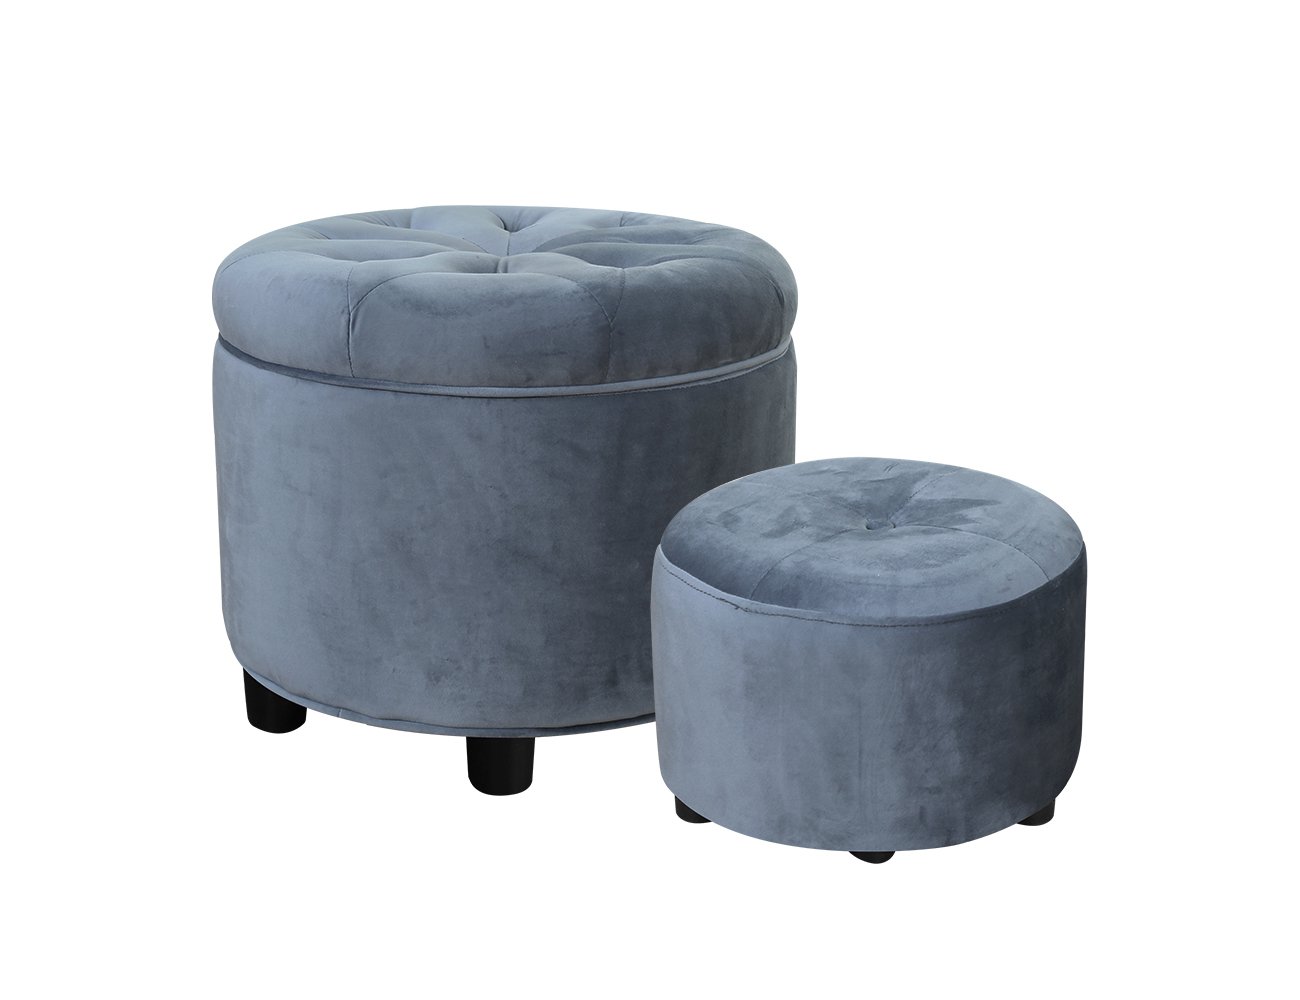 Luisa Round Storage Ottoman - Grey Blue